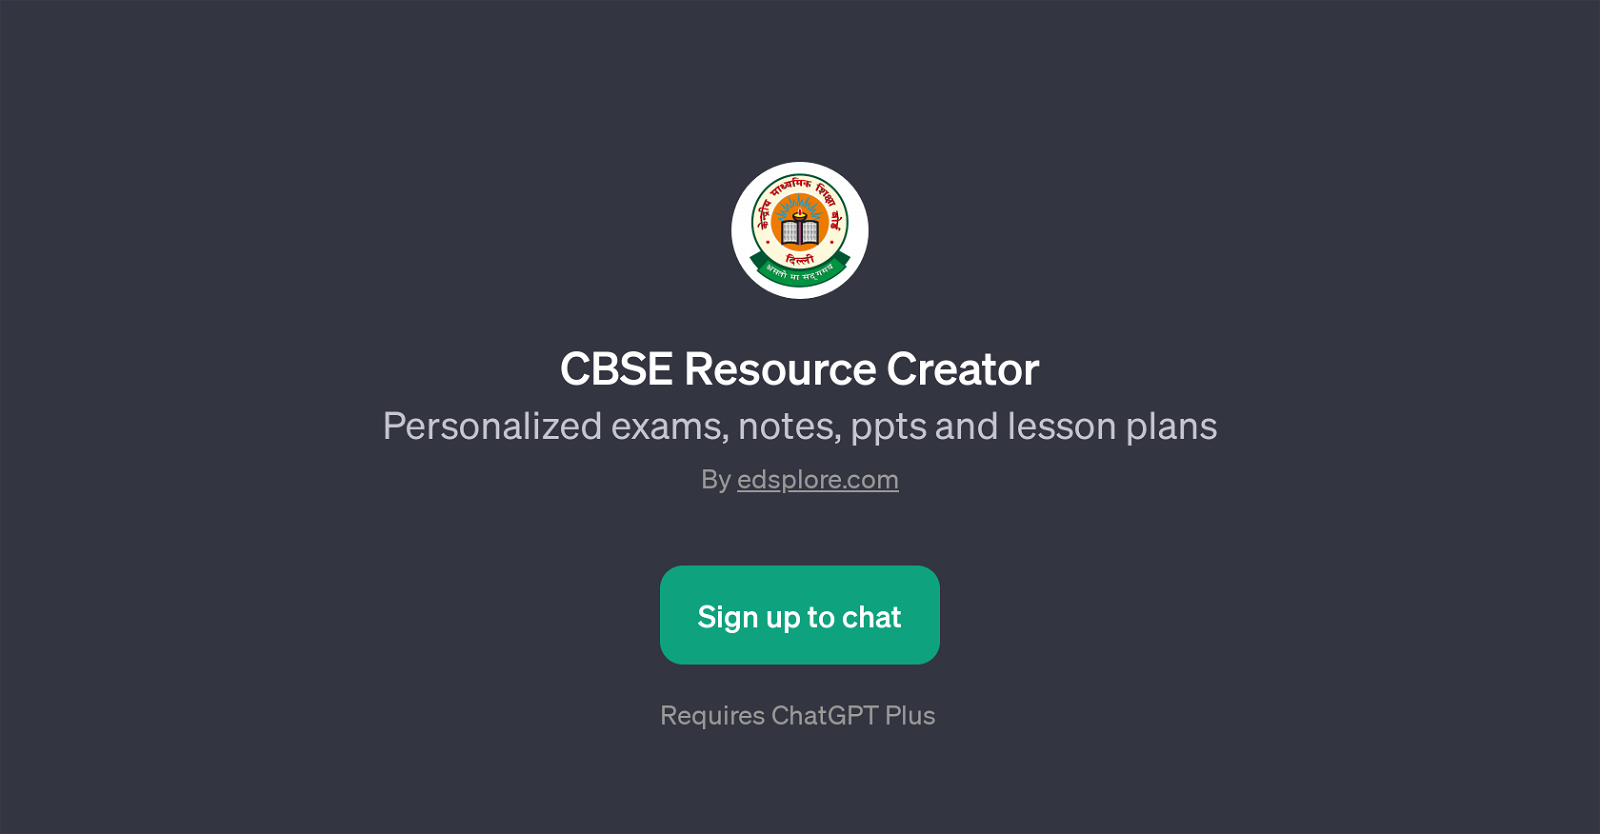 CBSE Resource Creator website